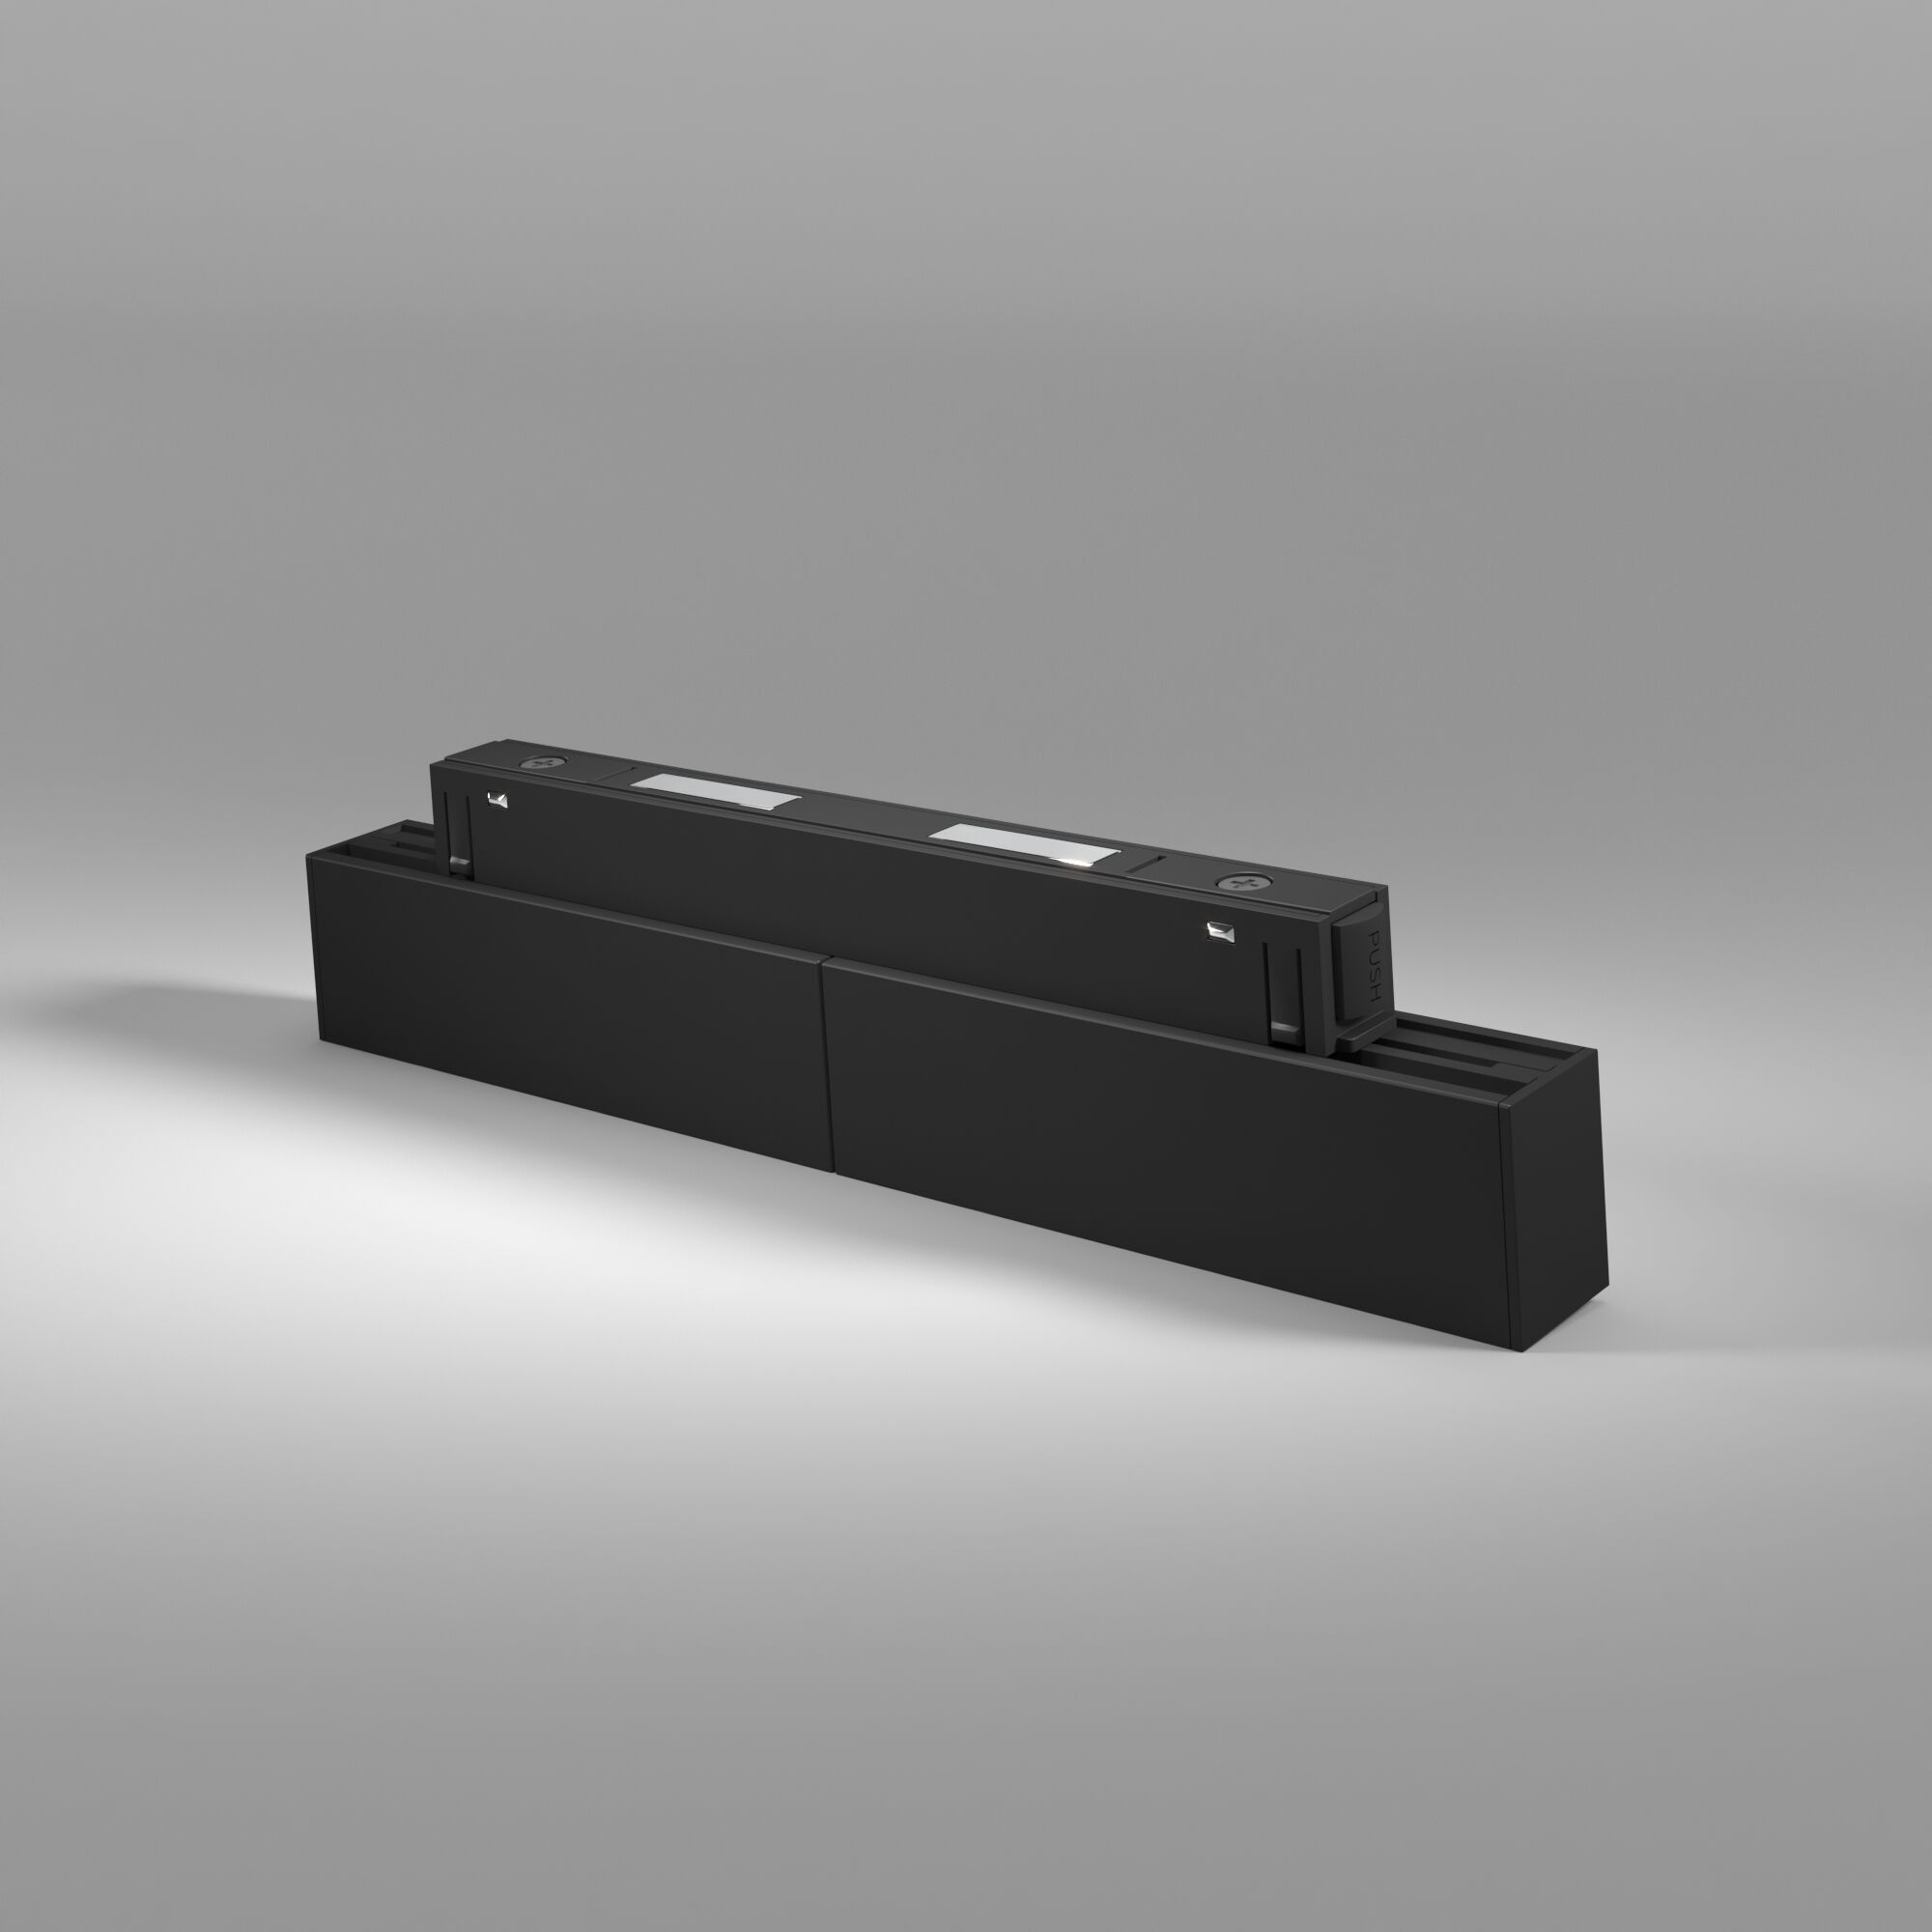 Slim Magnetic WL02 Трековый светильник 12W 4200K черный 85008/01